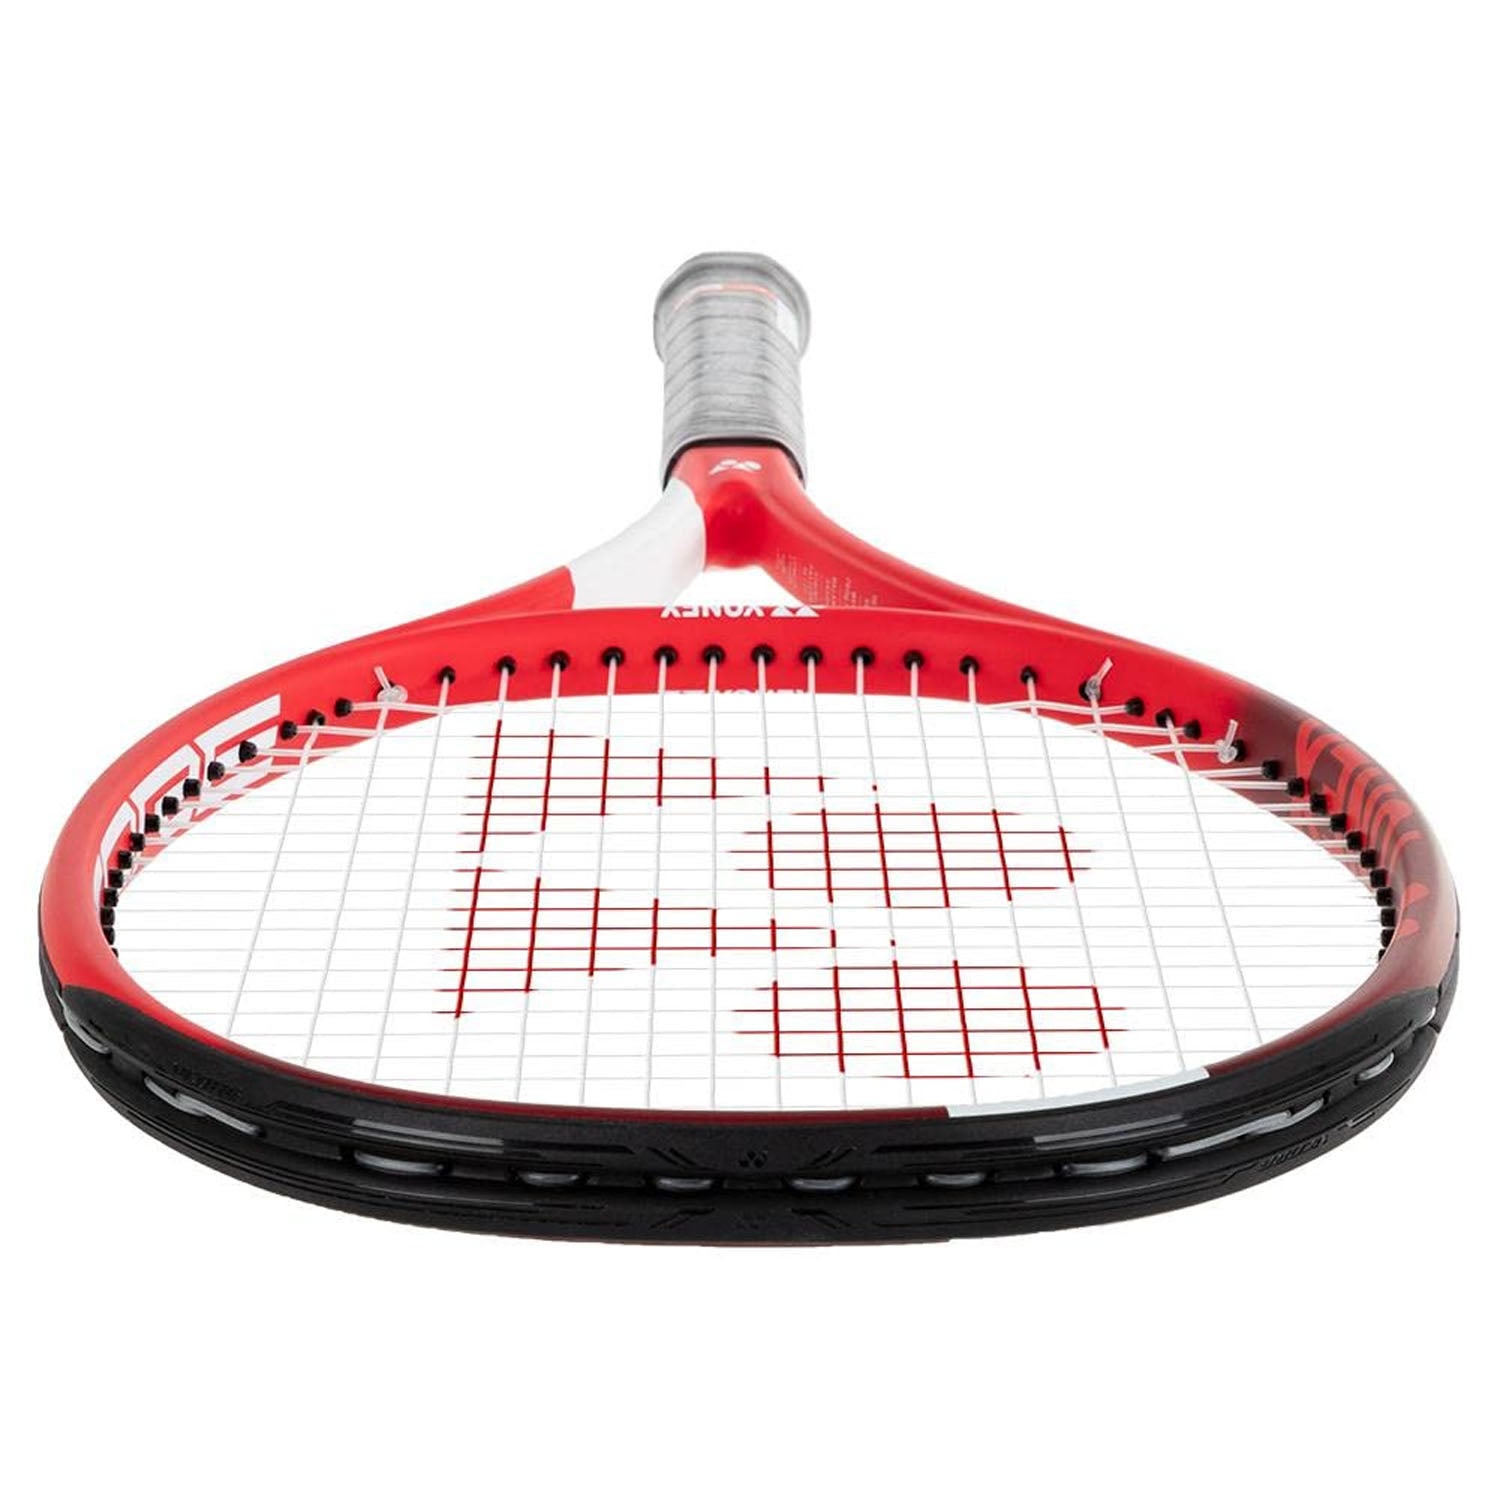 Yonex VCore ACE Tennis Racquet - Best Price online Prokicksports.com